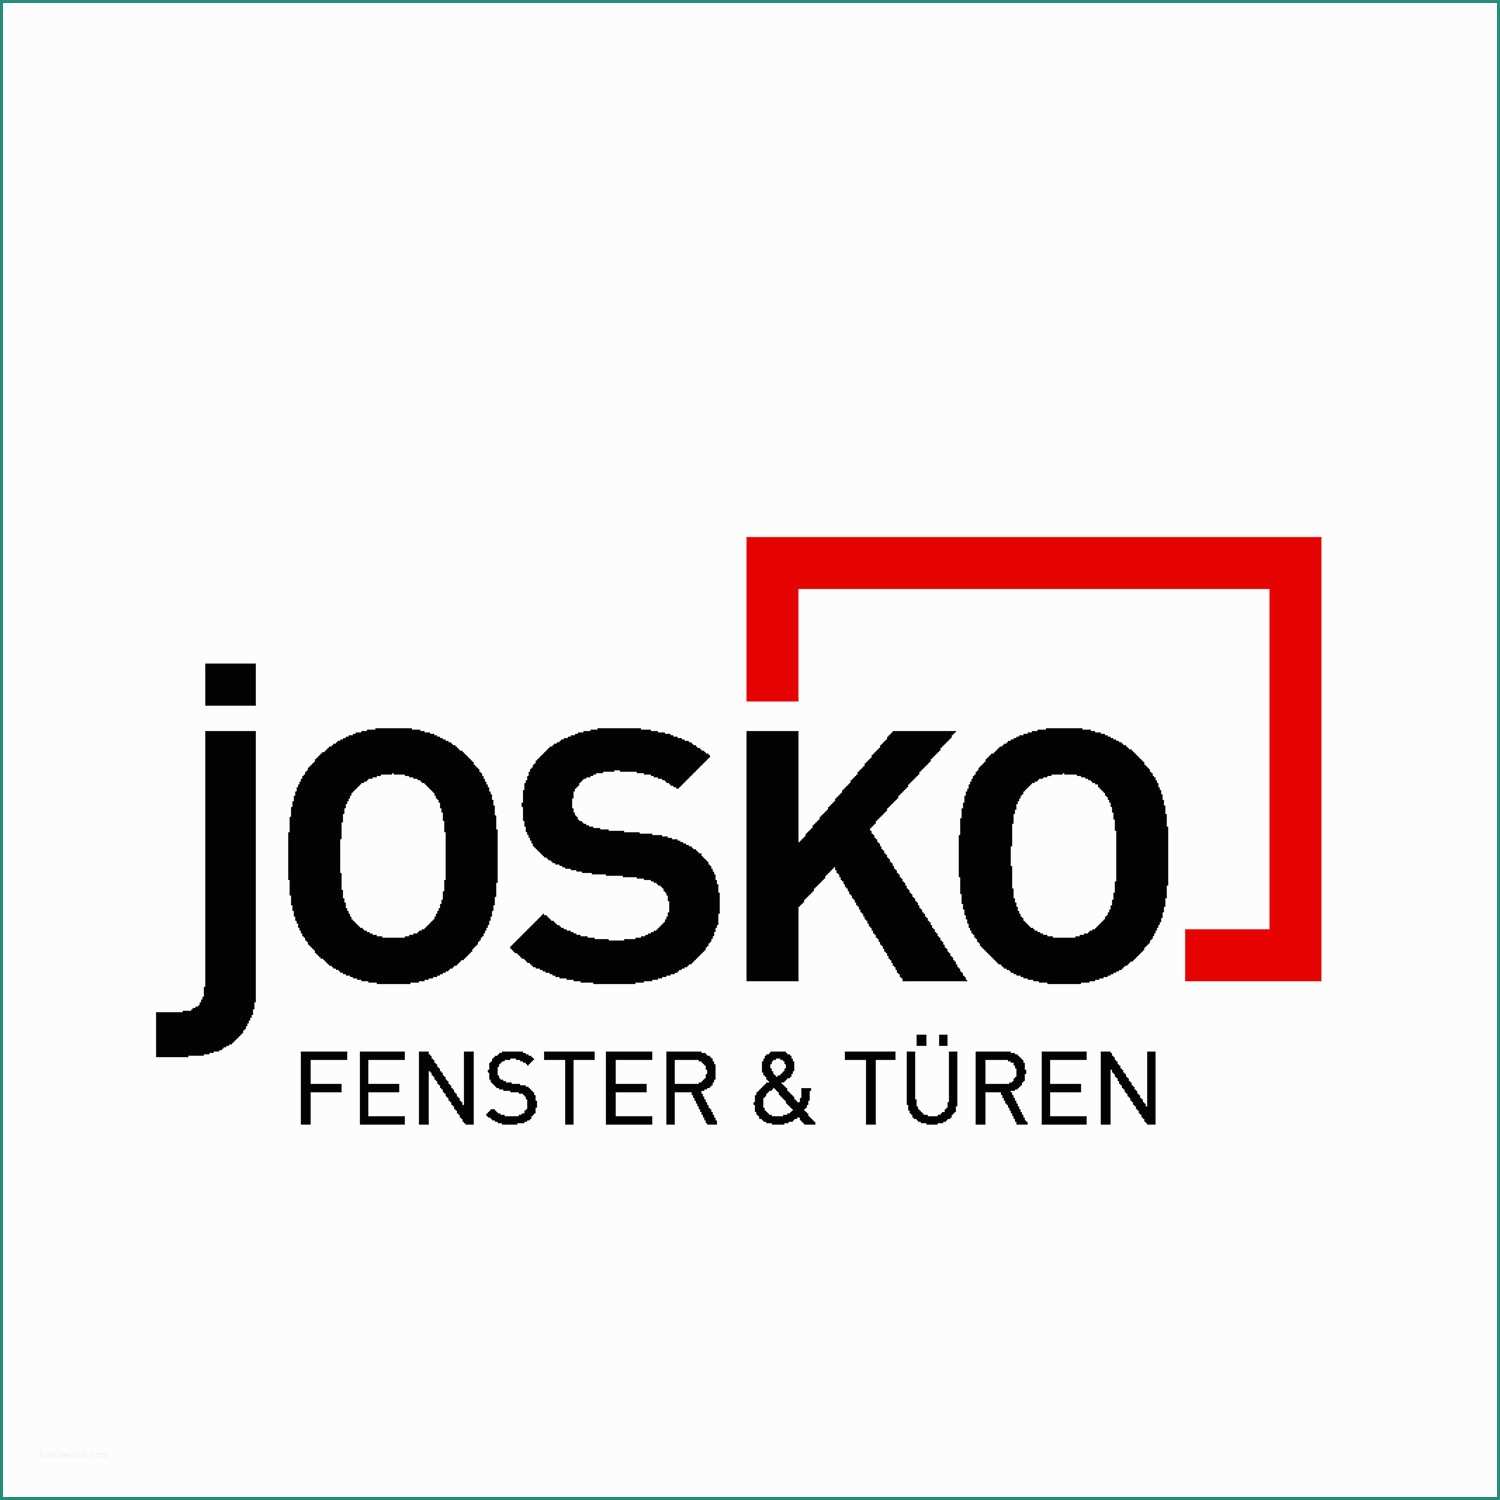 Premium Porte Interne Stile Inglese E Josko Fenster & Türen Gmbh